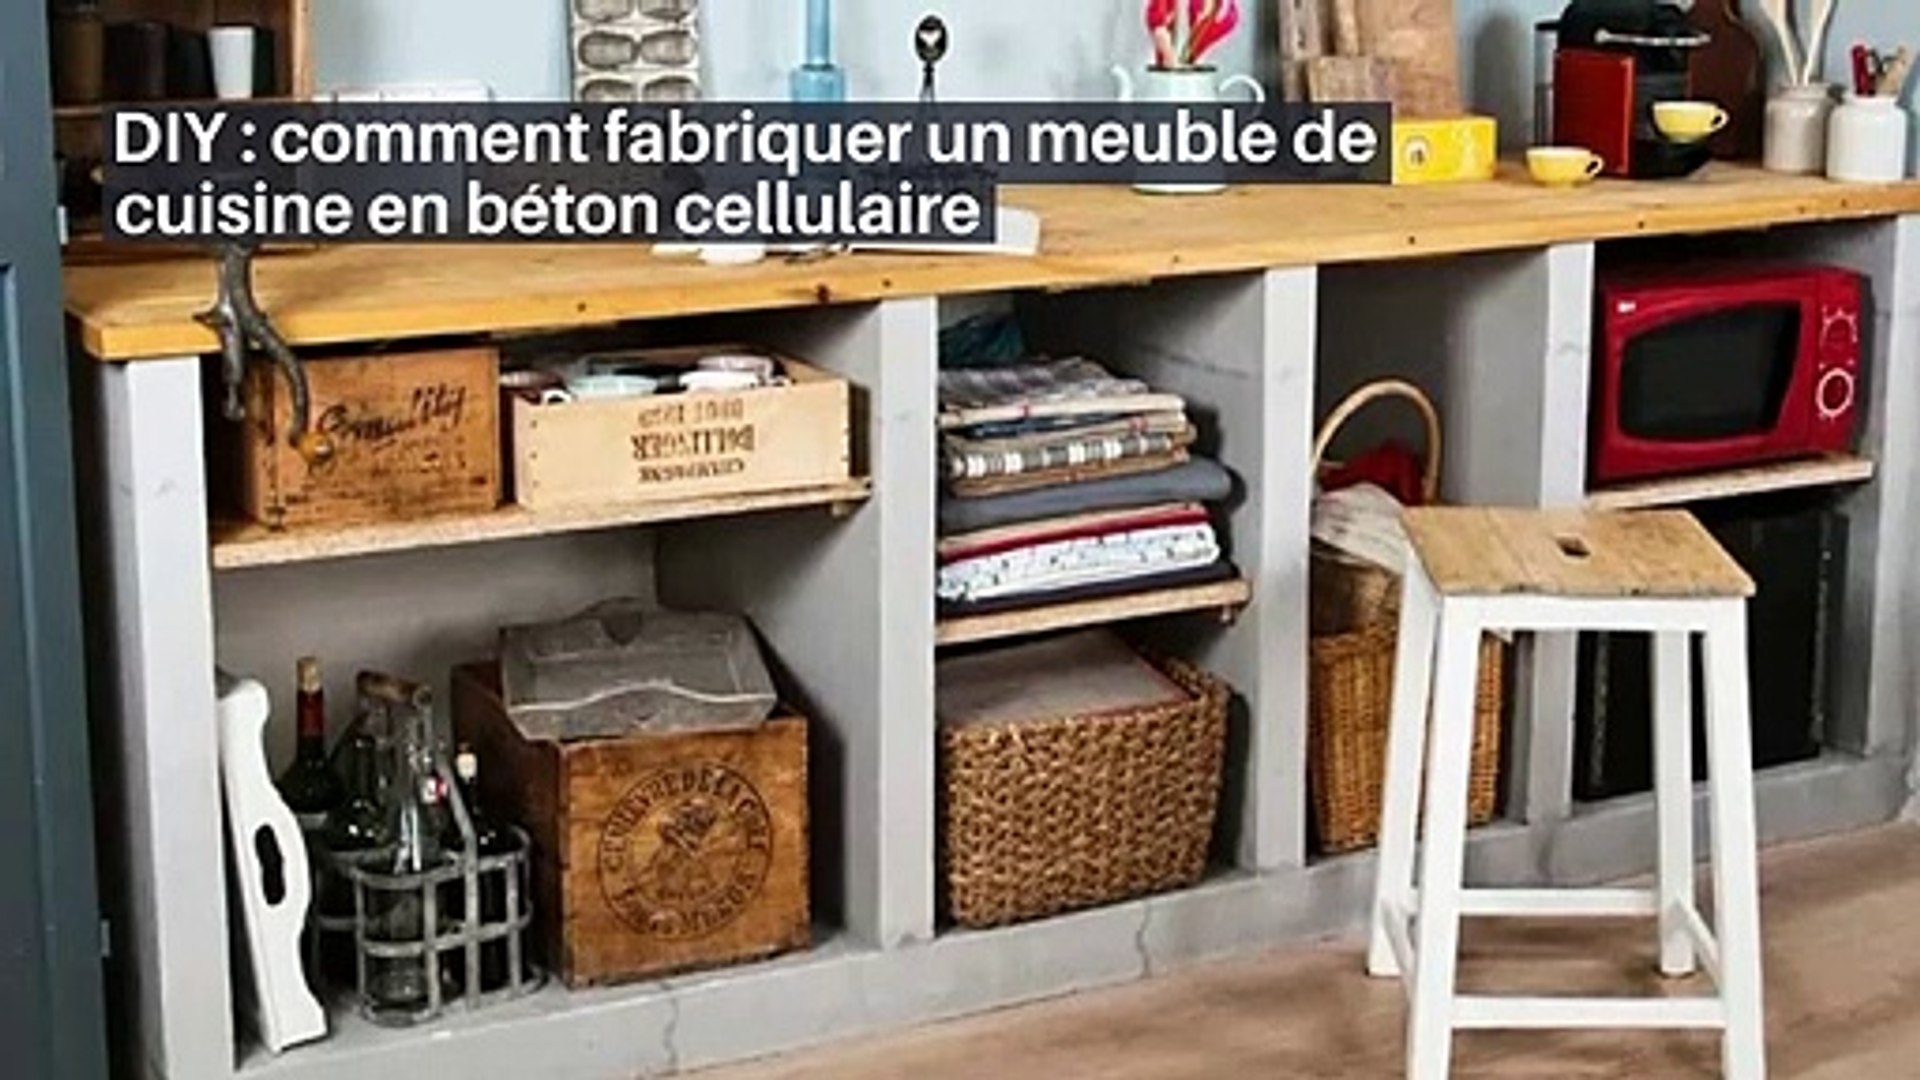 DIY : comment fabriquer un meuble de cuisine en béton cellulaire_IN - Vidéo  Dailymotion